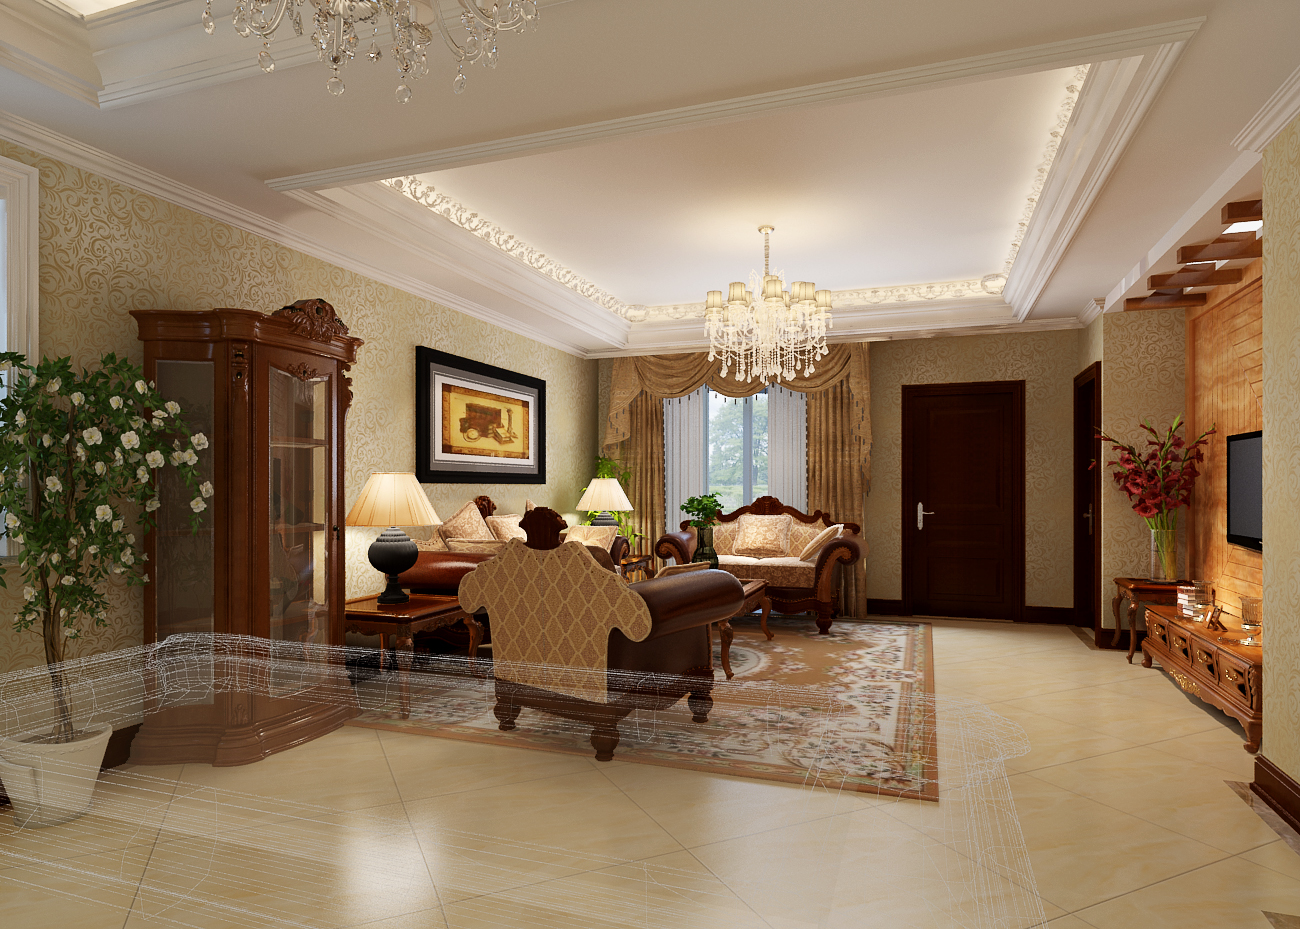 欧式 古典 别墅 客厅图片来自居然元洲装饰小杨在长滩壹号别墅古典欧式风格的分享